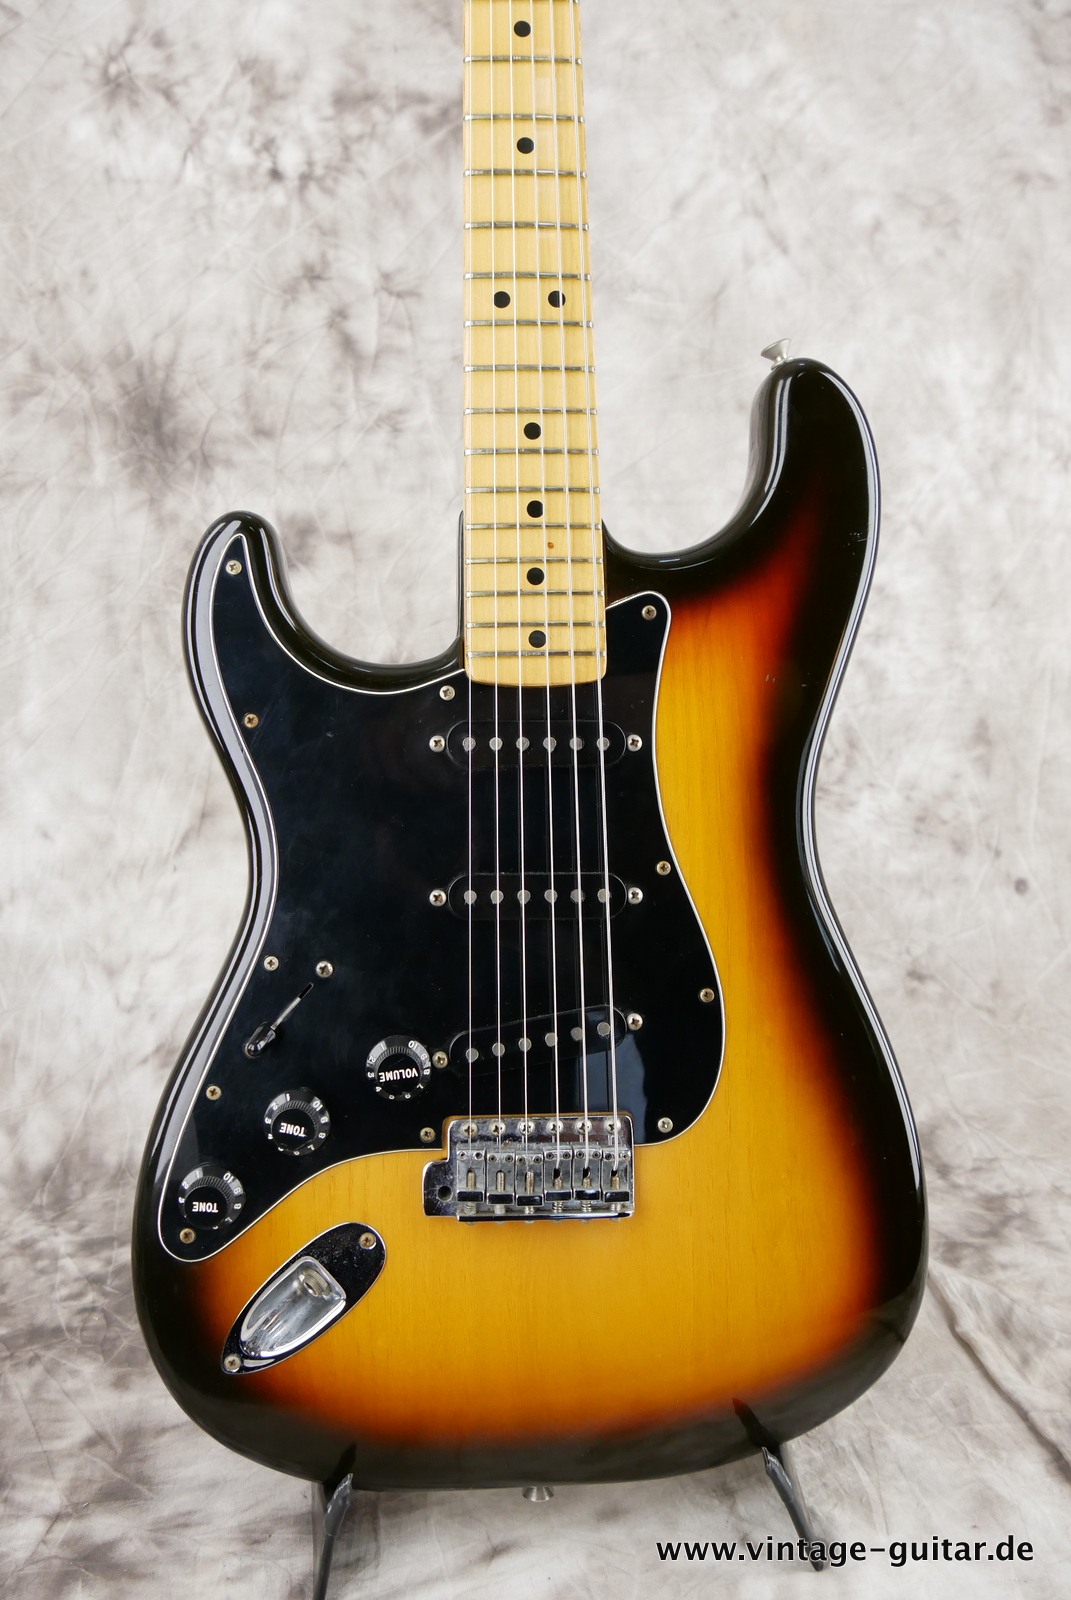 Fender_Left_Hand_Stratocaster_1980_sunburst_usa_maple_neck-007.JPG